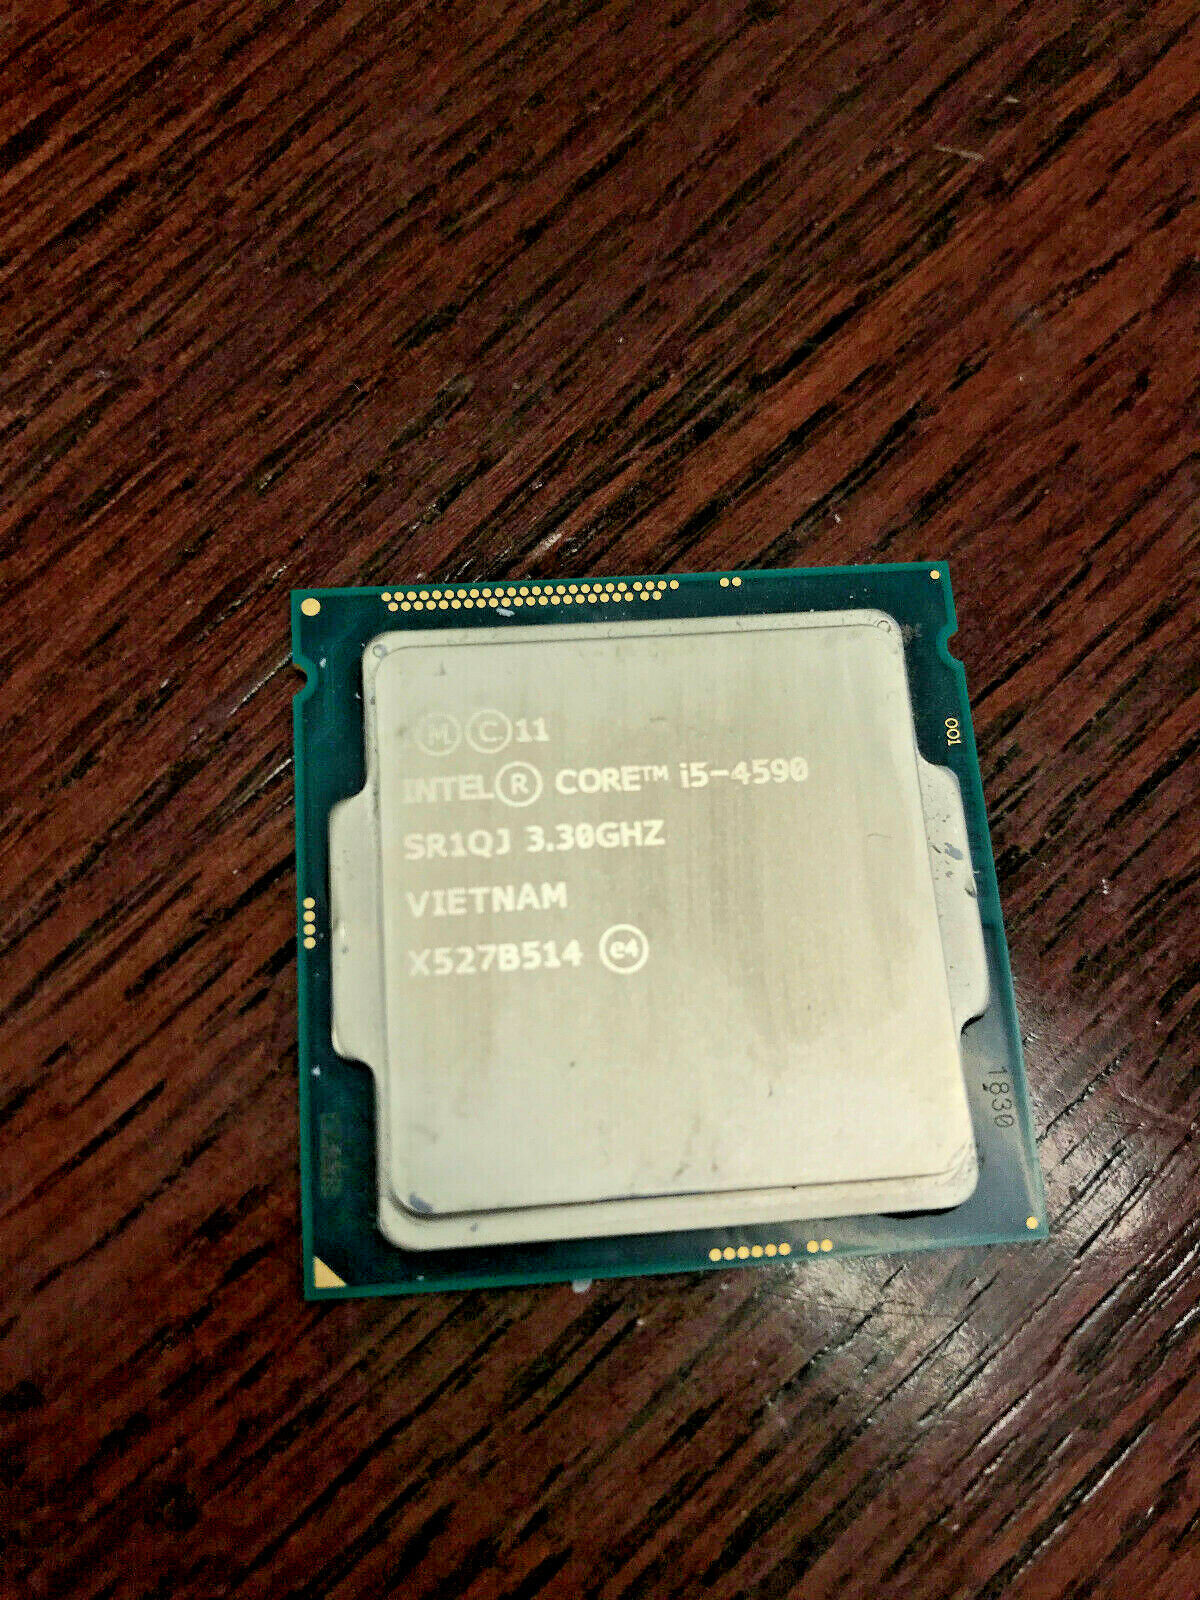 Intel Core i5-4590 Quad-Core 3.30GHz LGA1150 Desktop Processor CPU SR1QJ